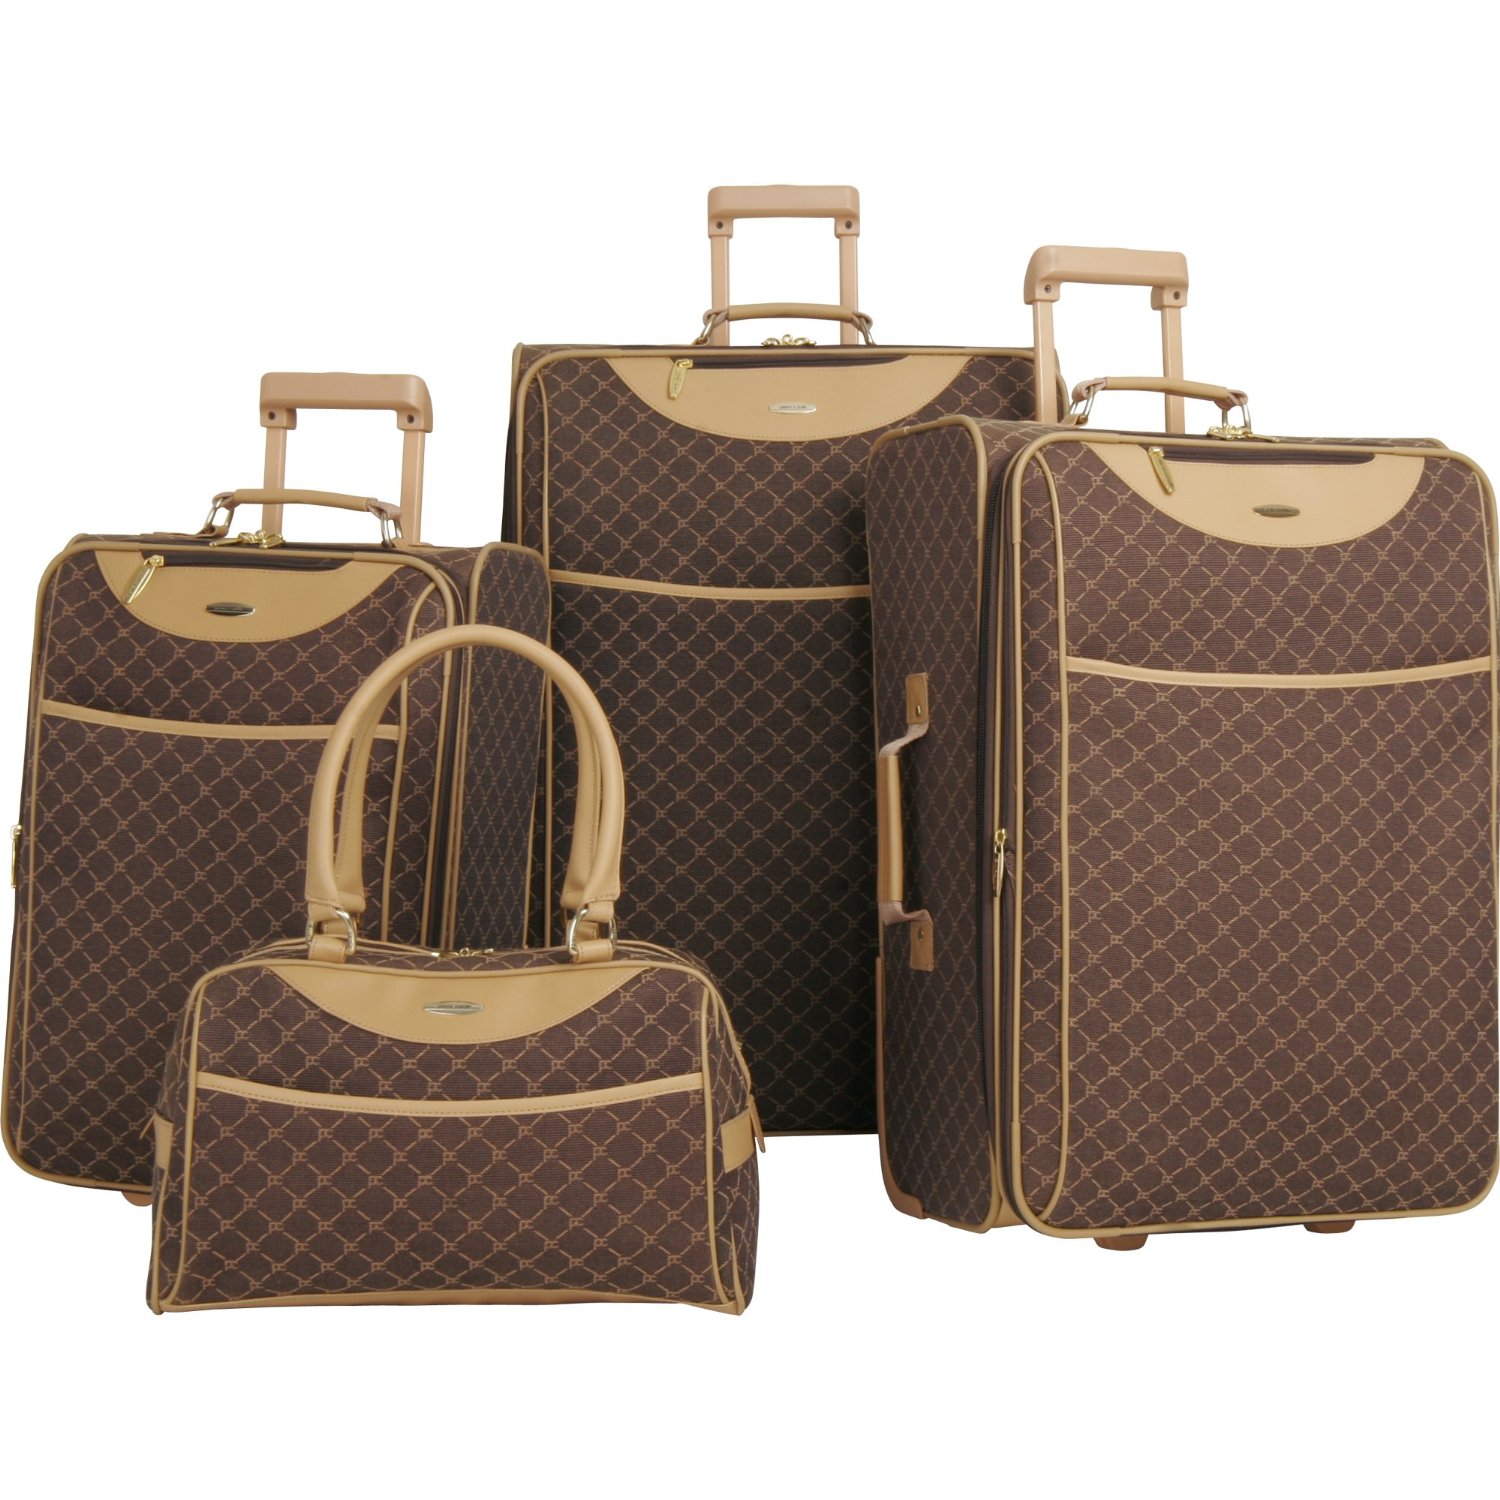 皮爾-卡丹 Pierre Cardin Luggage Pc Signature 經典款4件套行李箱 $155.74